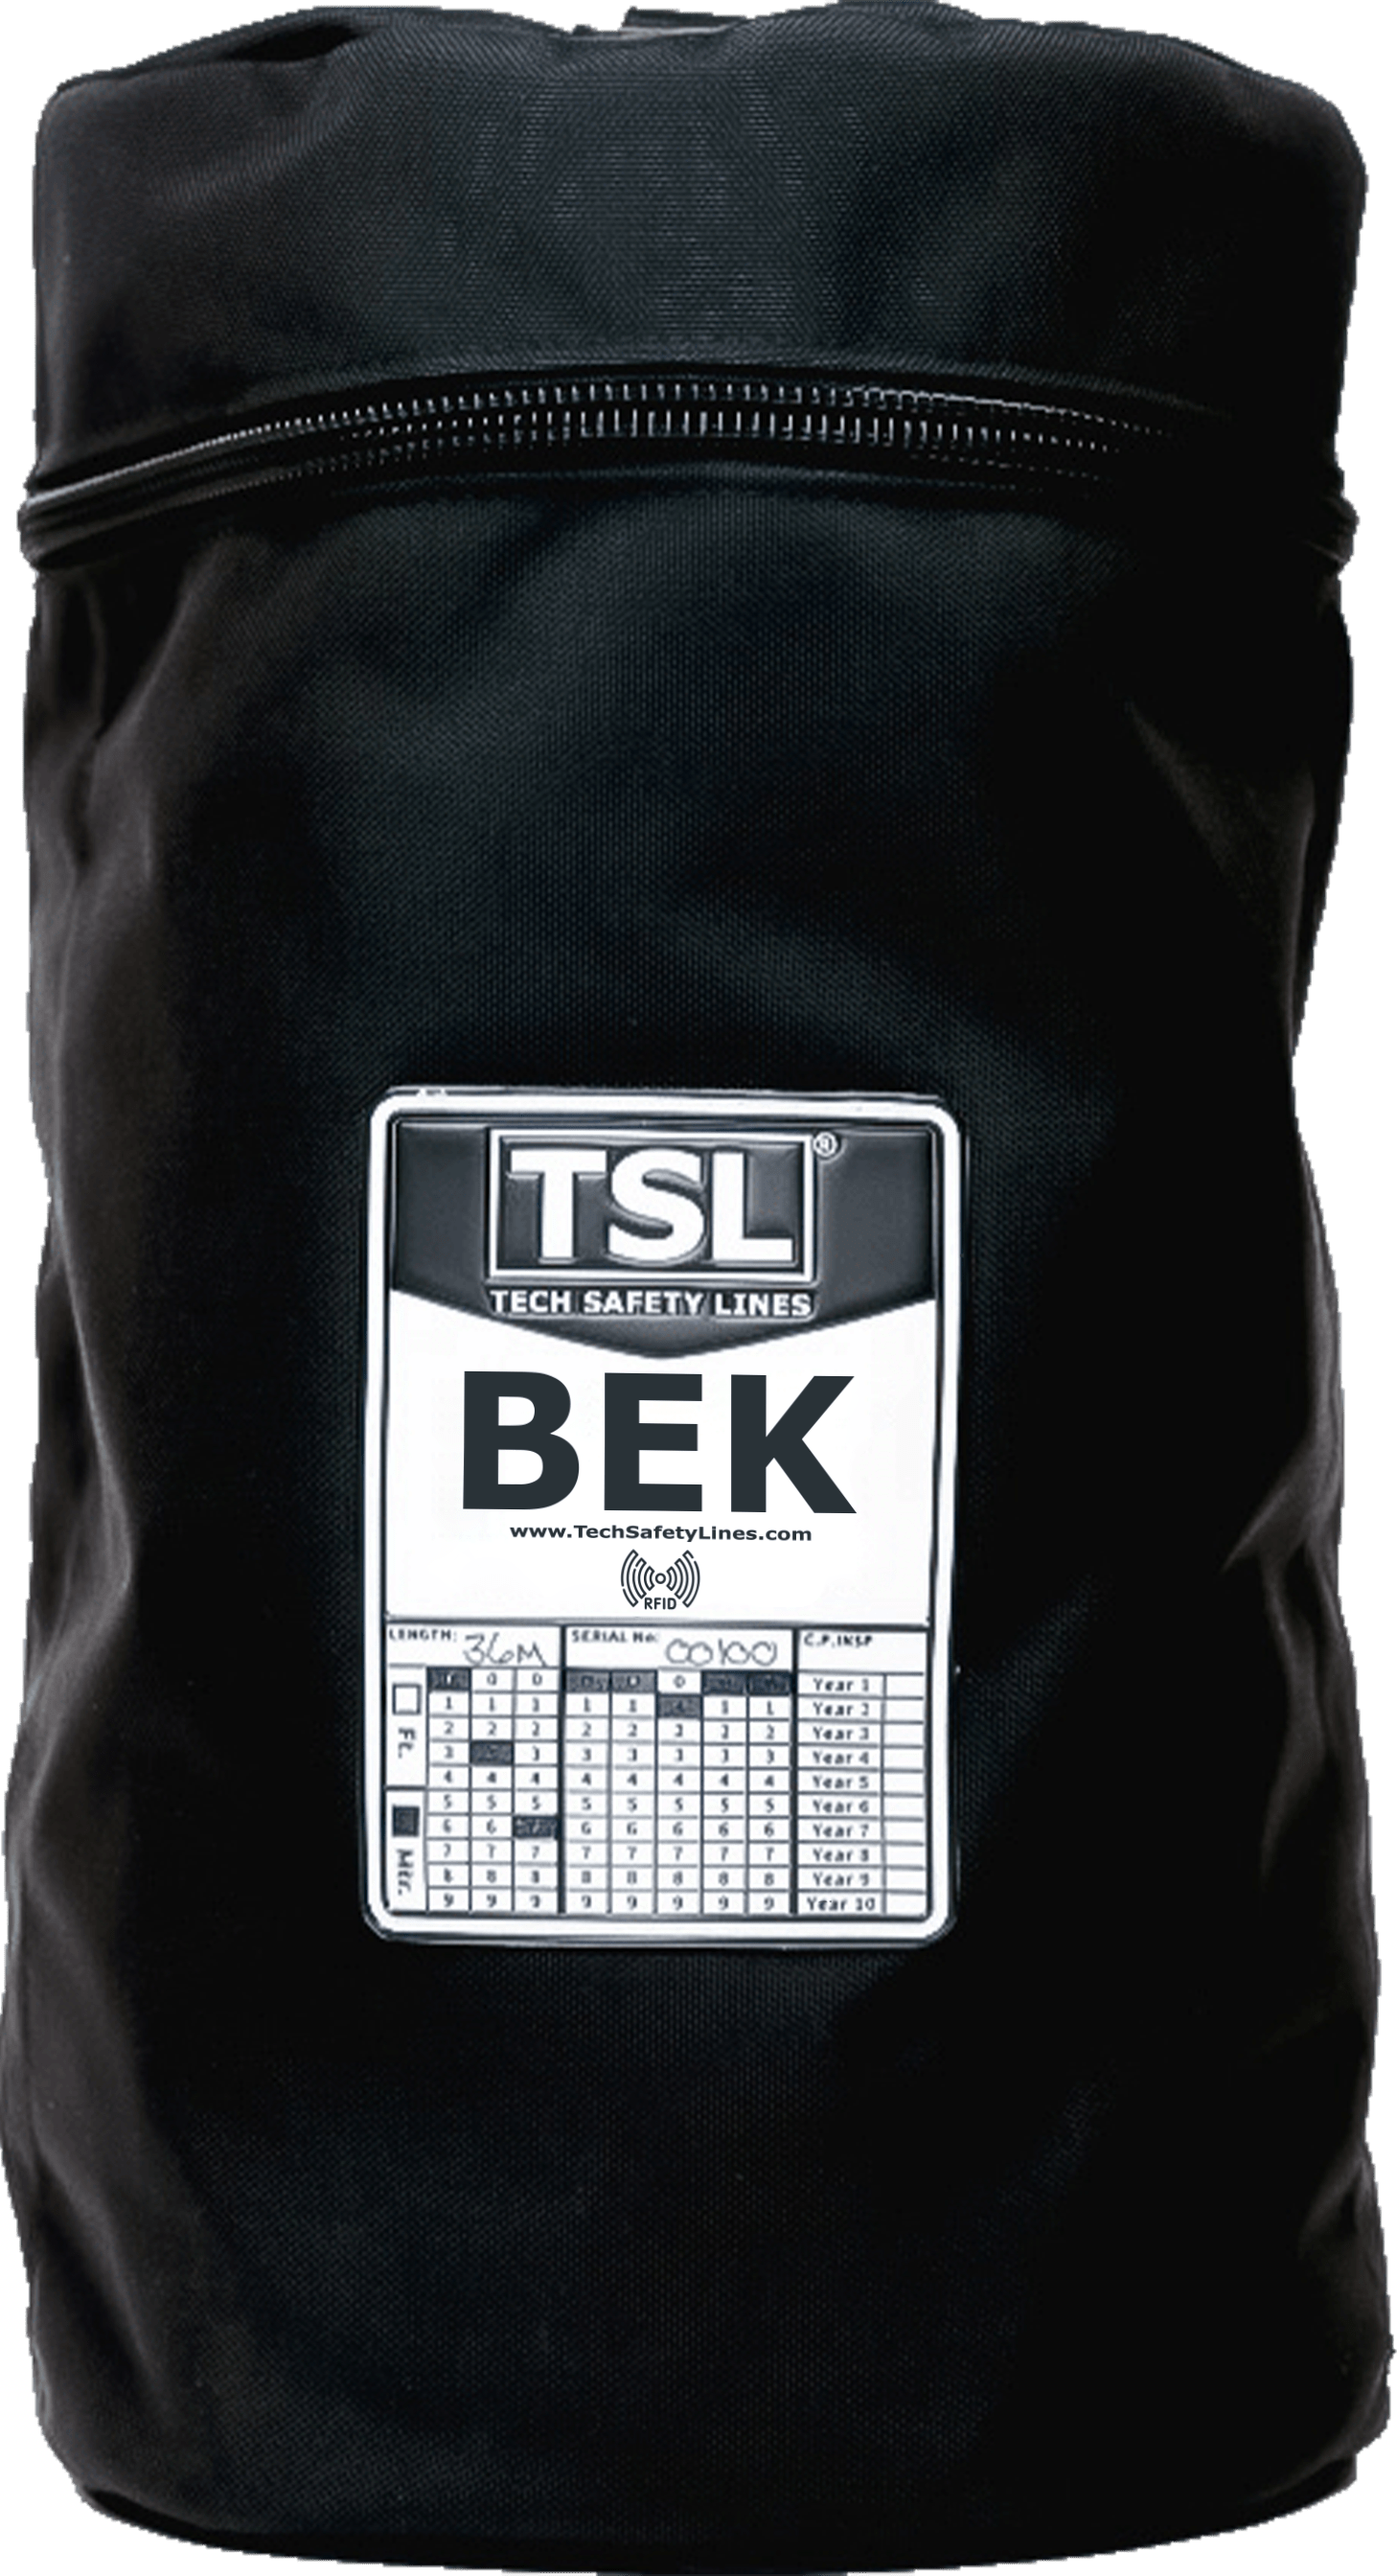 BEK bag